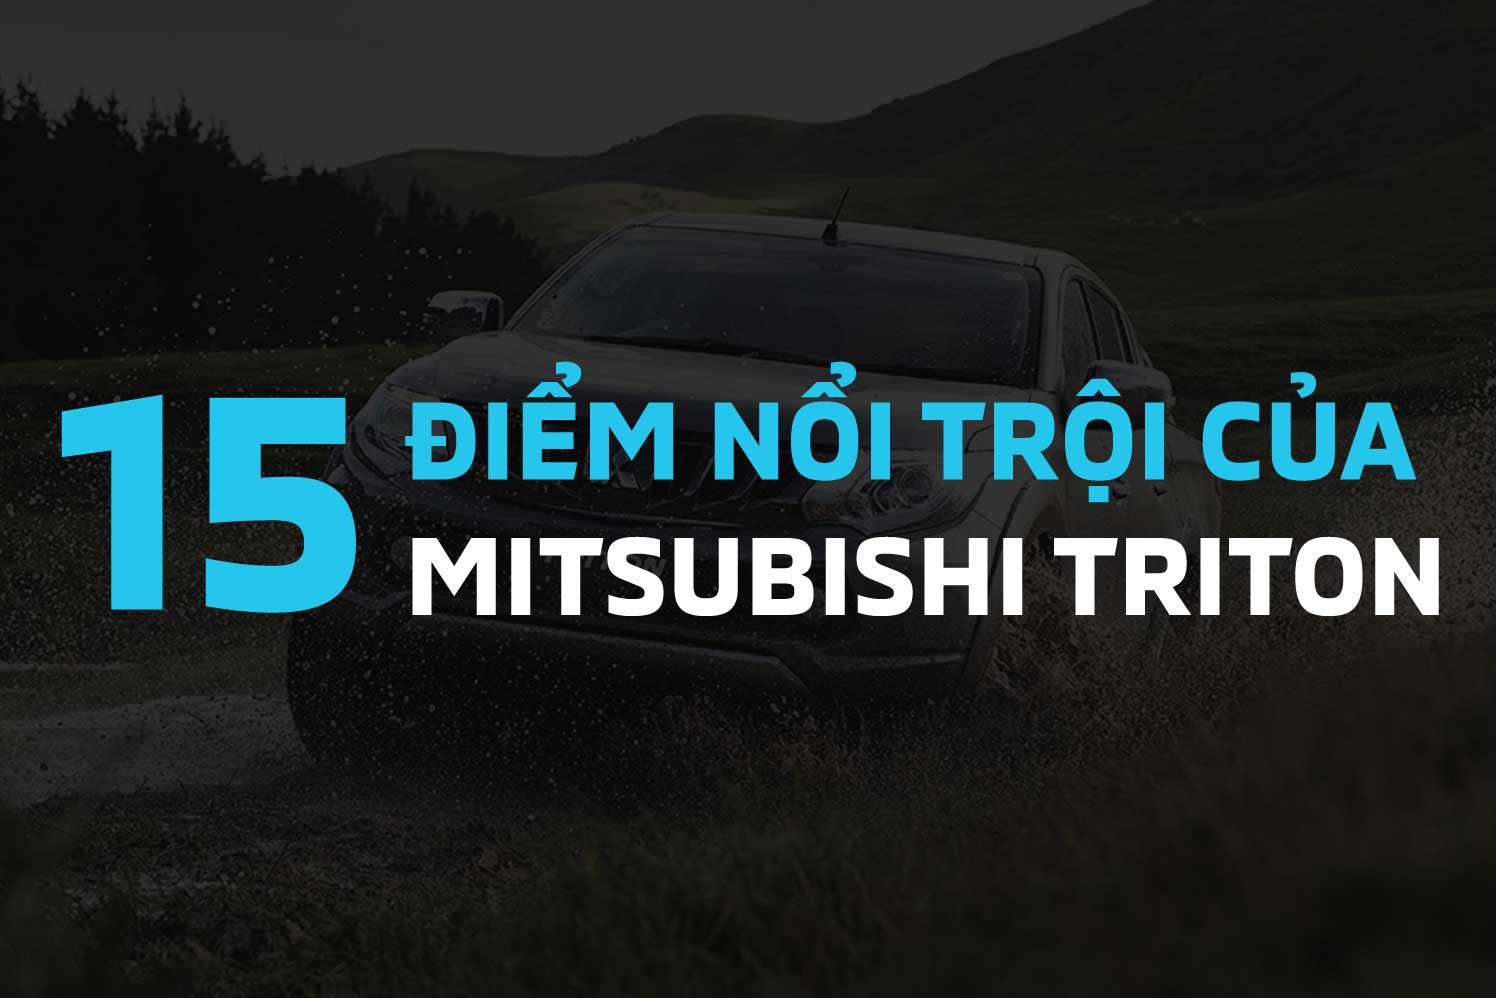 Mitsubishi Triton nổi trội với khả năng vận hành đỉnh cao